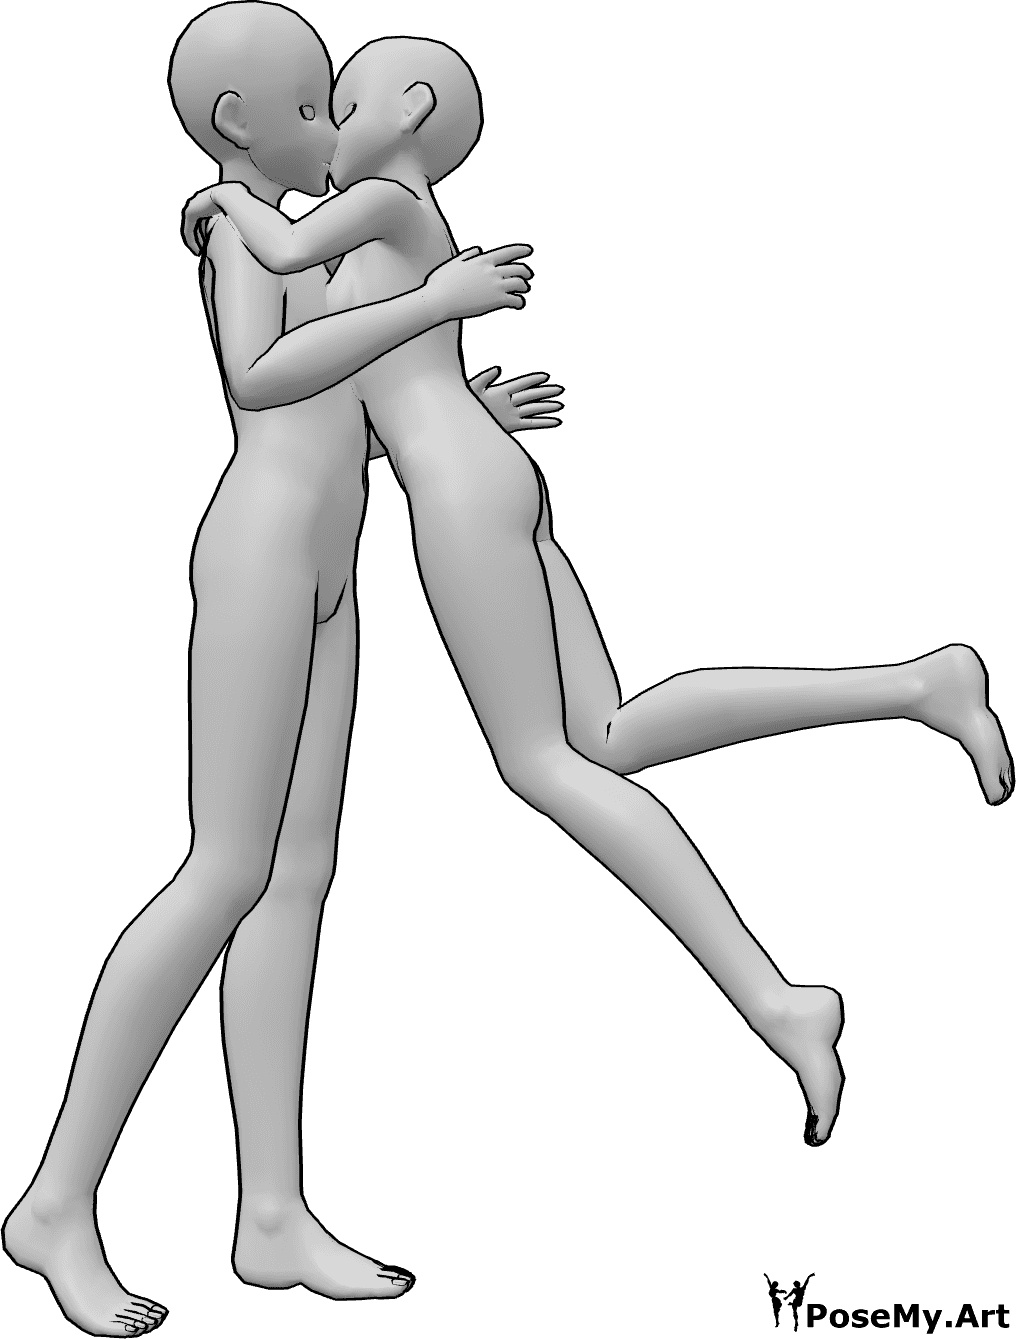 Posen-Referenz- Anime Überraschung Kuss Pose - Das Anime-Weibchen springt und gibt dem Männchen eine überraschende Umarmung und einen Kuss